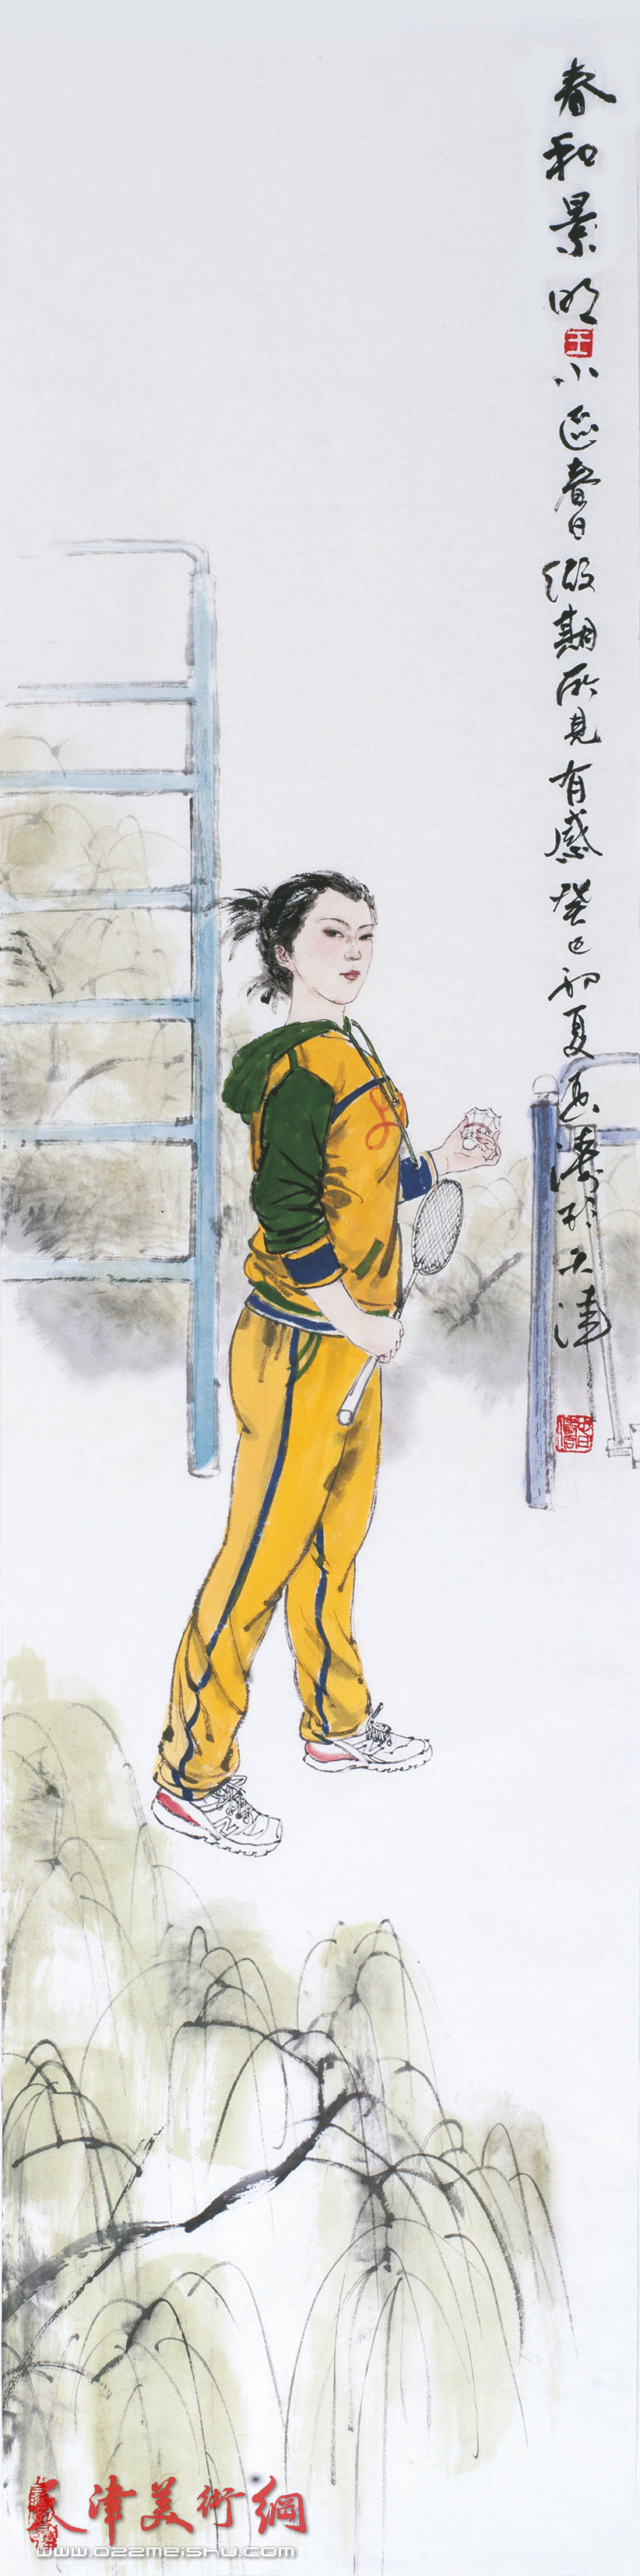 王春涛画展在齐鲁大地展津派画家风采，图为展出的王春涛新作《春和景明》